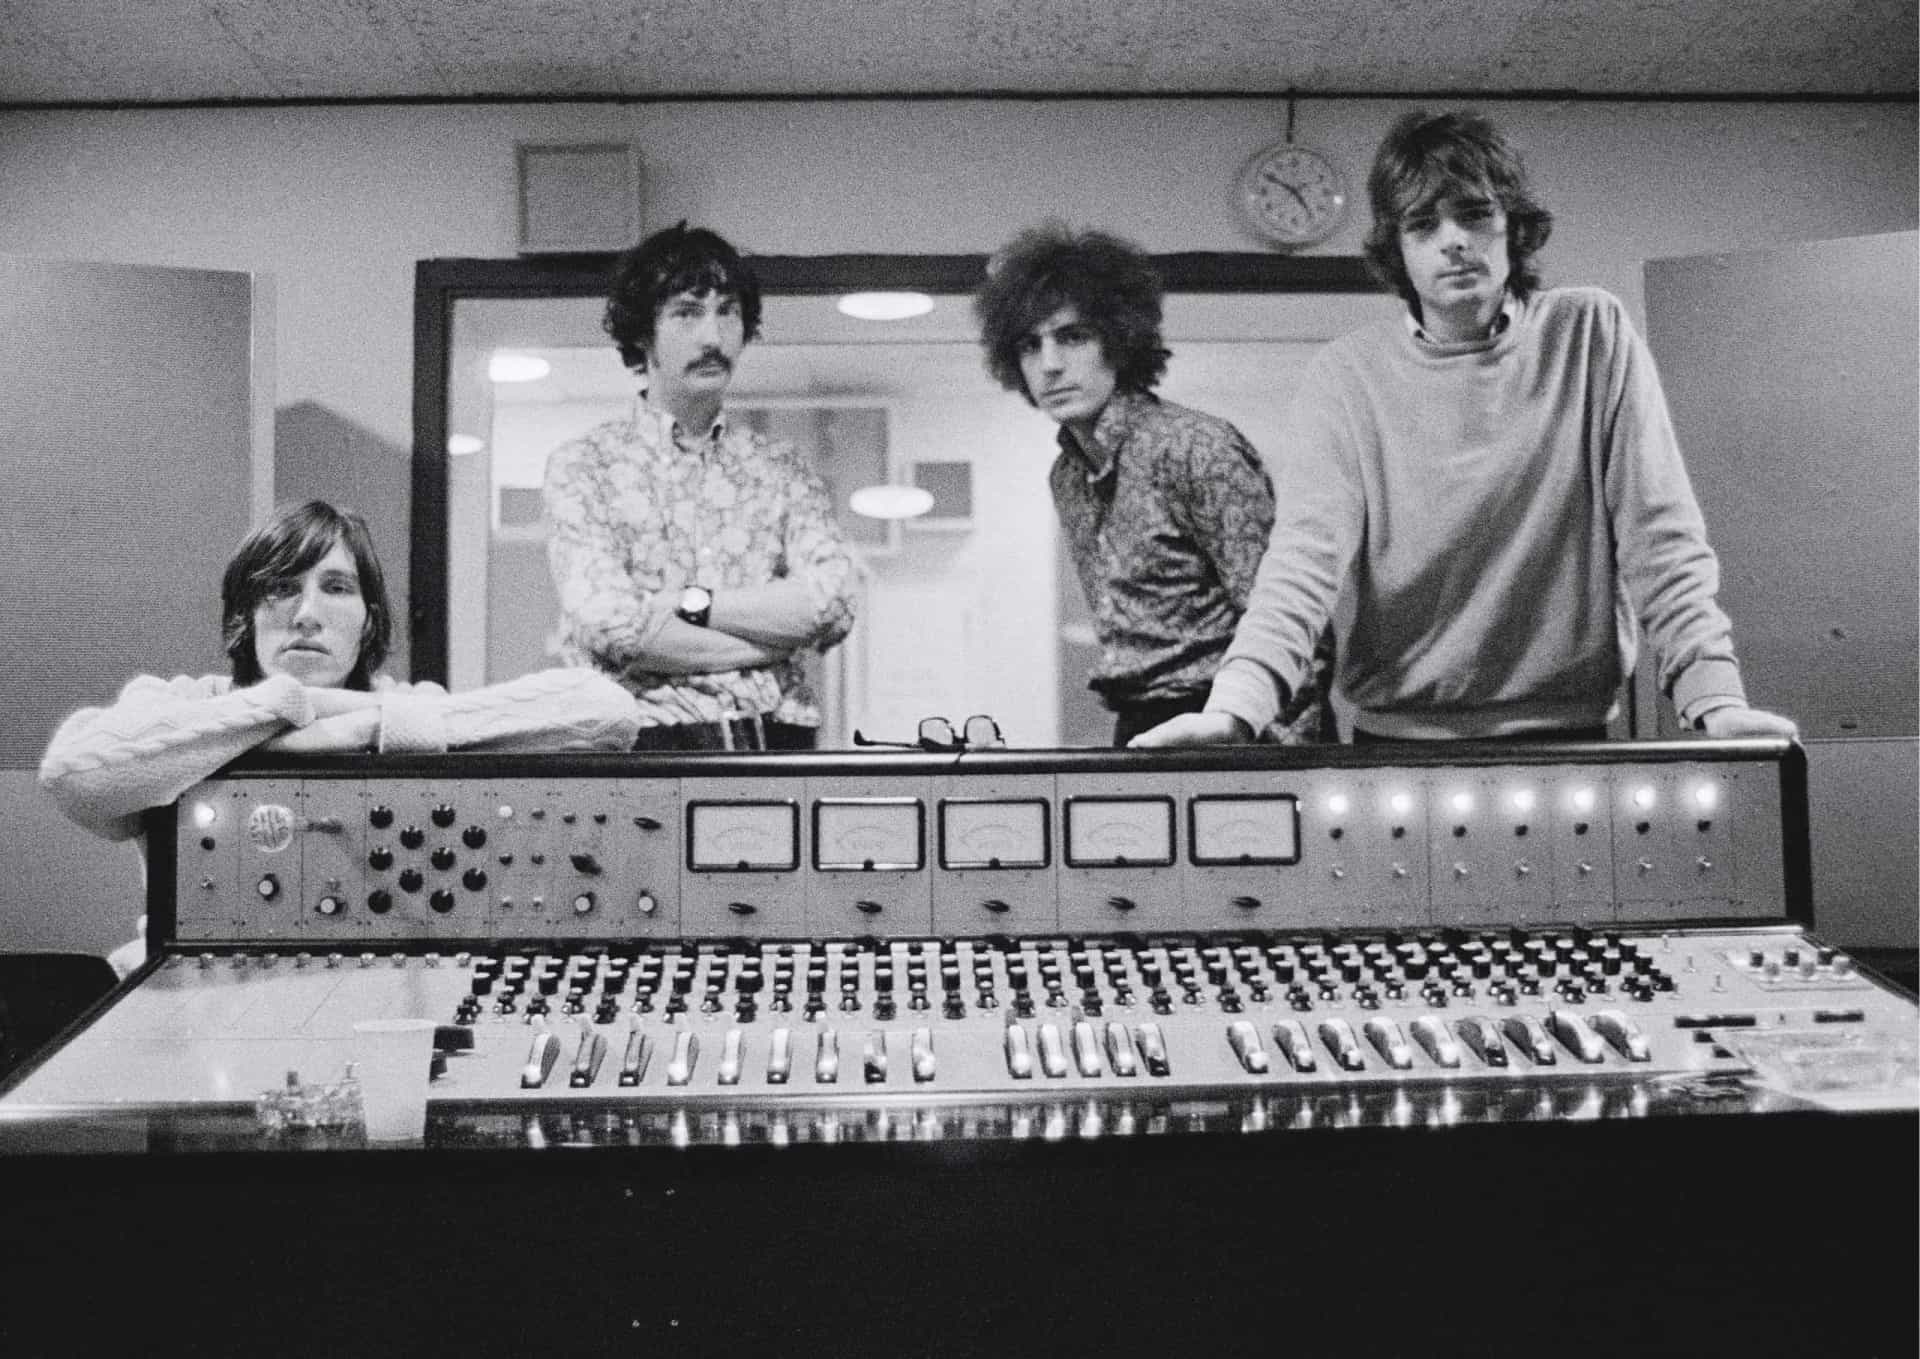 <p>"Lucifer Sam" erscheint auf "The Piper at the Gates of Dawn", dem ersten Studioalbum der englischen Rockband Pink Floyd, das im August 1968 veröffentlicht wurde.</p><p>Sie können auch mögen:<a href="https://de.starsinsider.com/n/323766?utm_source=msn.com&utm_medium=display&utm_campaign=referral_description&utm_content=516985"> Das sind die ältesten und jüngsten Oscar-Gewinner</a></p>